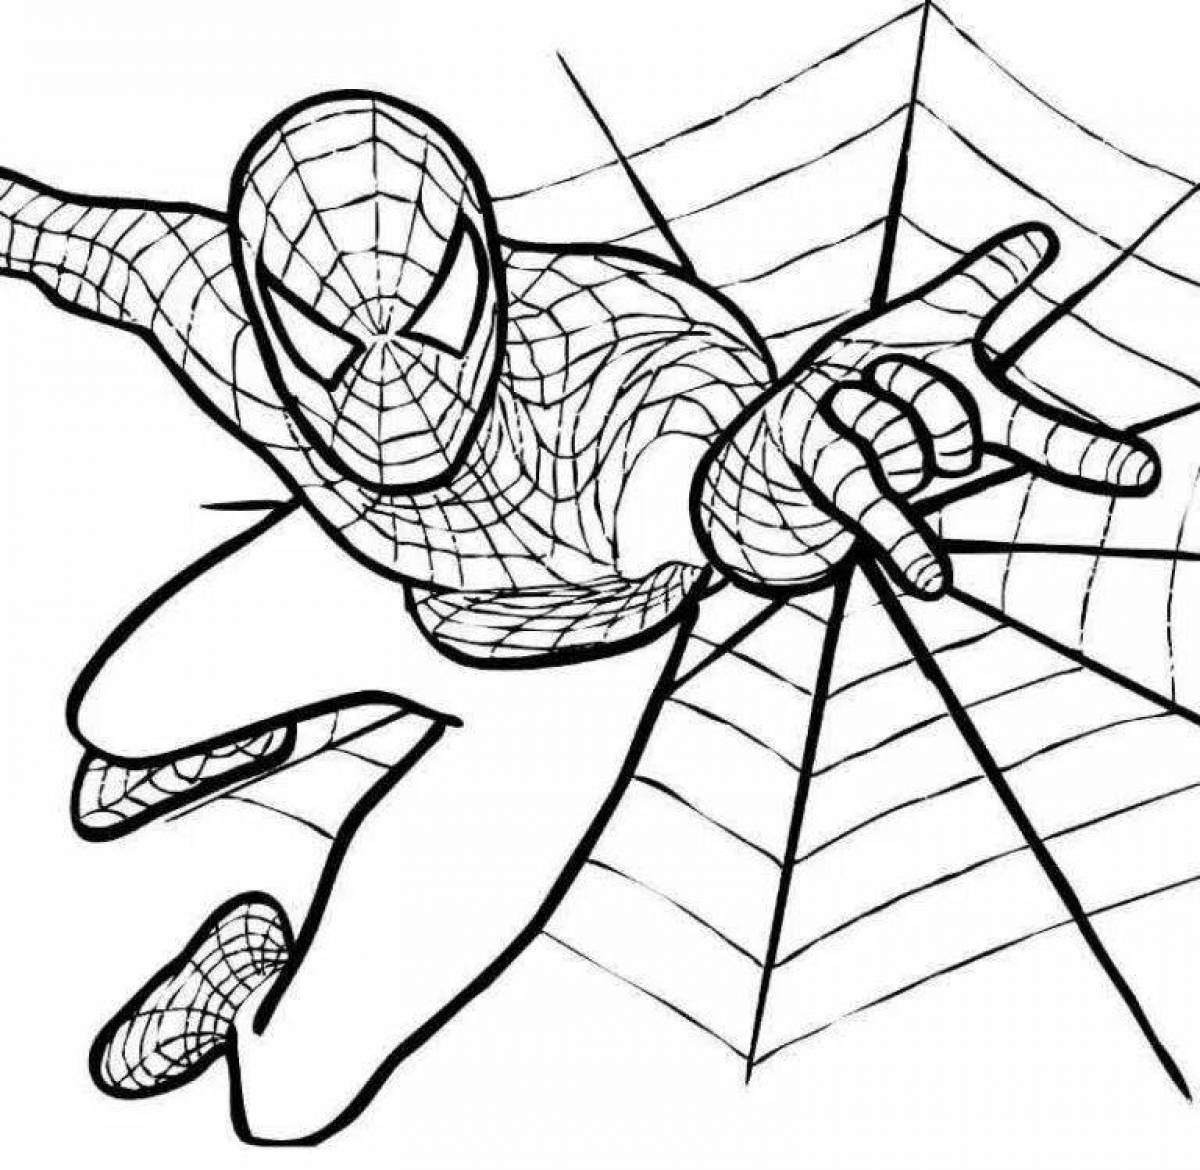 Turn on spiderman #1